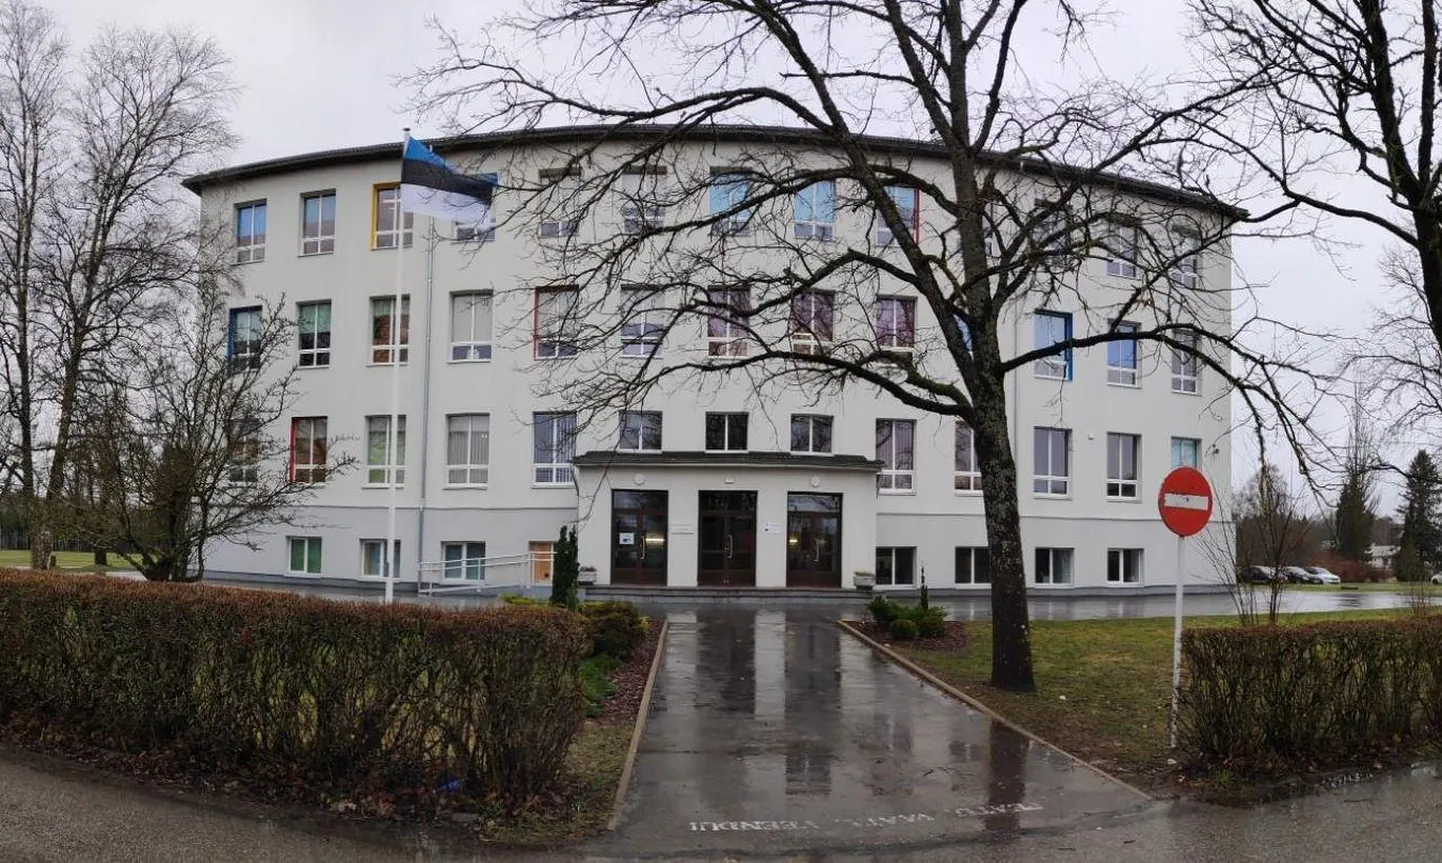 Põhja-Pärnumaa vald soovib kolida Pärnu-Jaagupi muusikakooli kõrval asuvasse põhikooli.